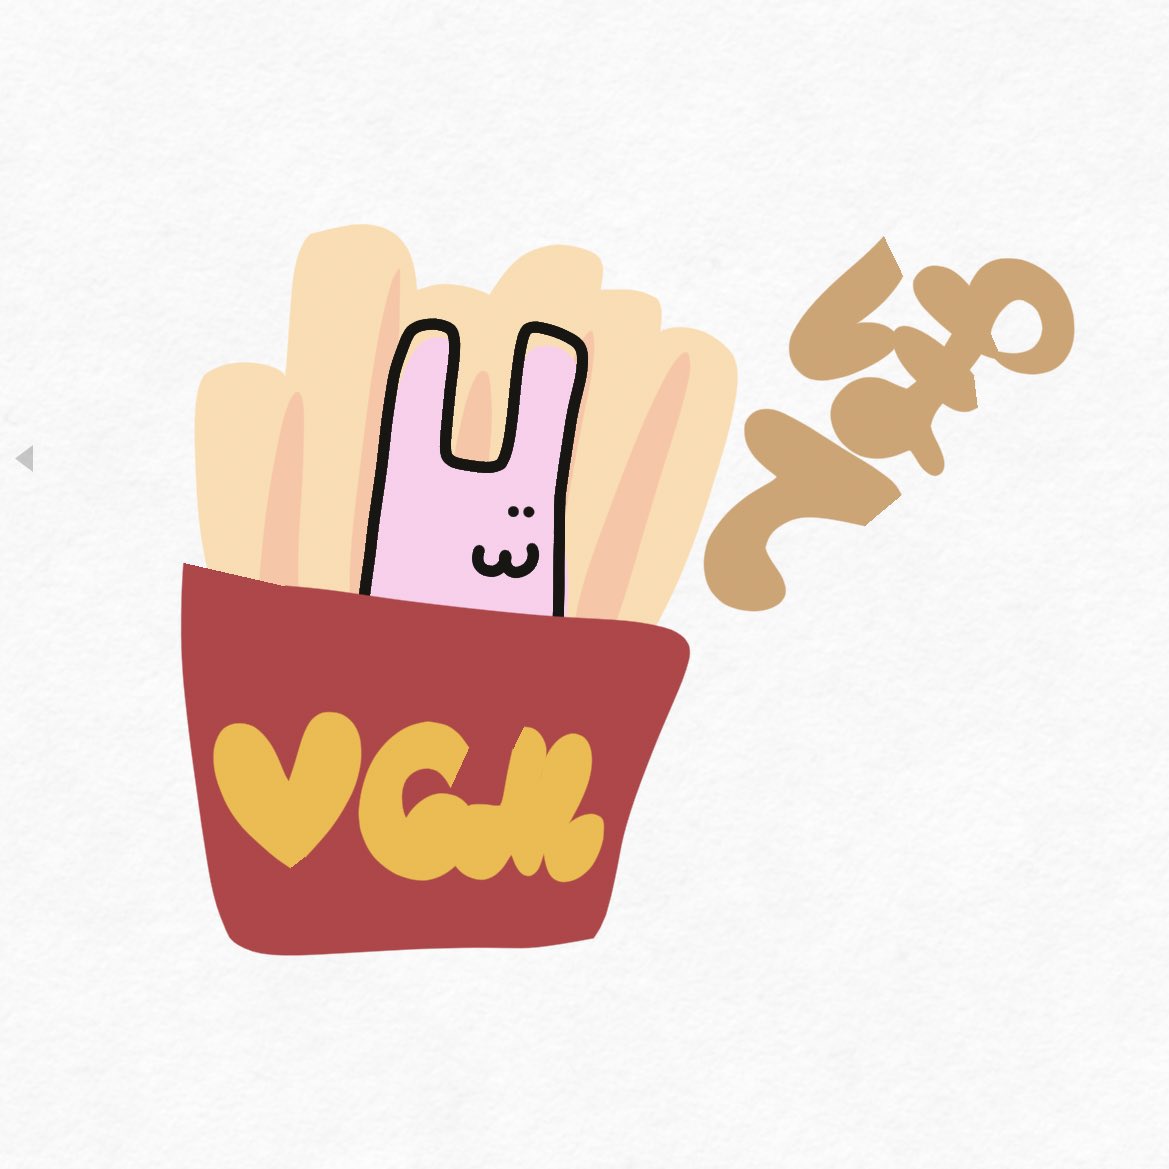 【号外】VGMポテト復活🍟 #VeryLongAnimalsNews ・VGMポテト復活！おめでとうございます🎉 ・ルールが変更されました⚠️ ・「vgm」「@vgm_potato」「#verylonganimals」をつけてポストするとポテトがもらえます🍟 ・VGMポテトを手動配布してくださっていた初空月さん、ありがとうございました✨